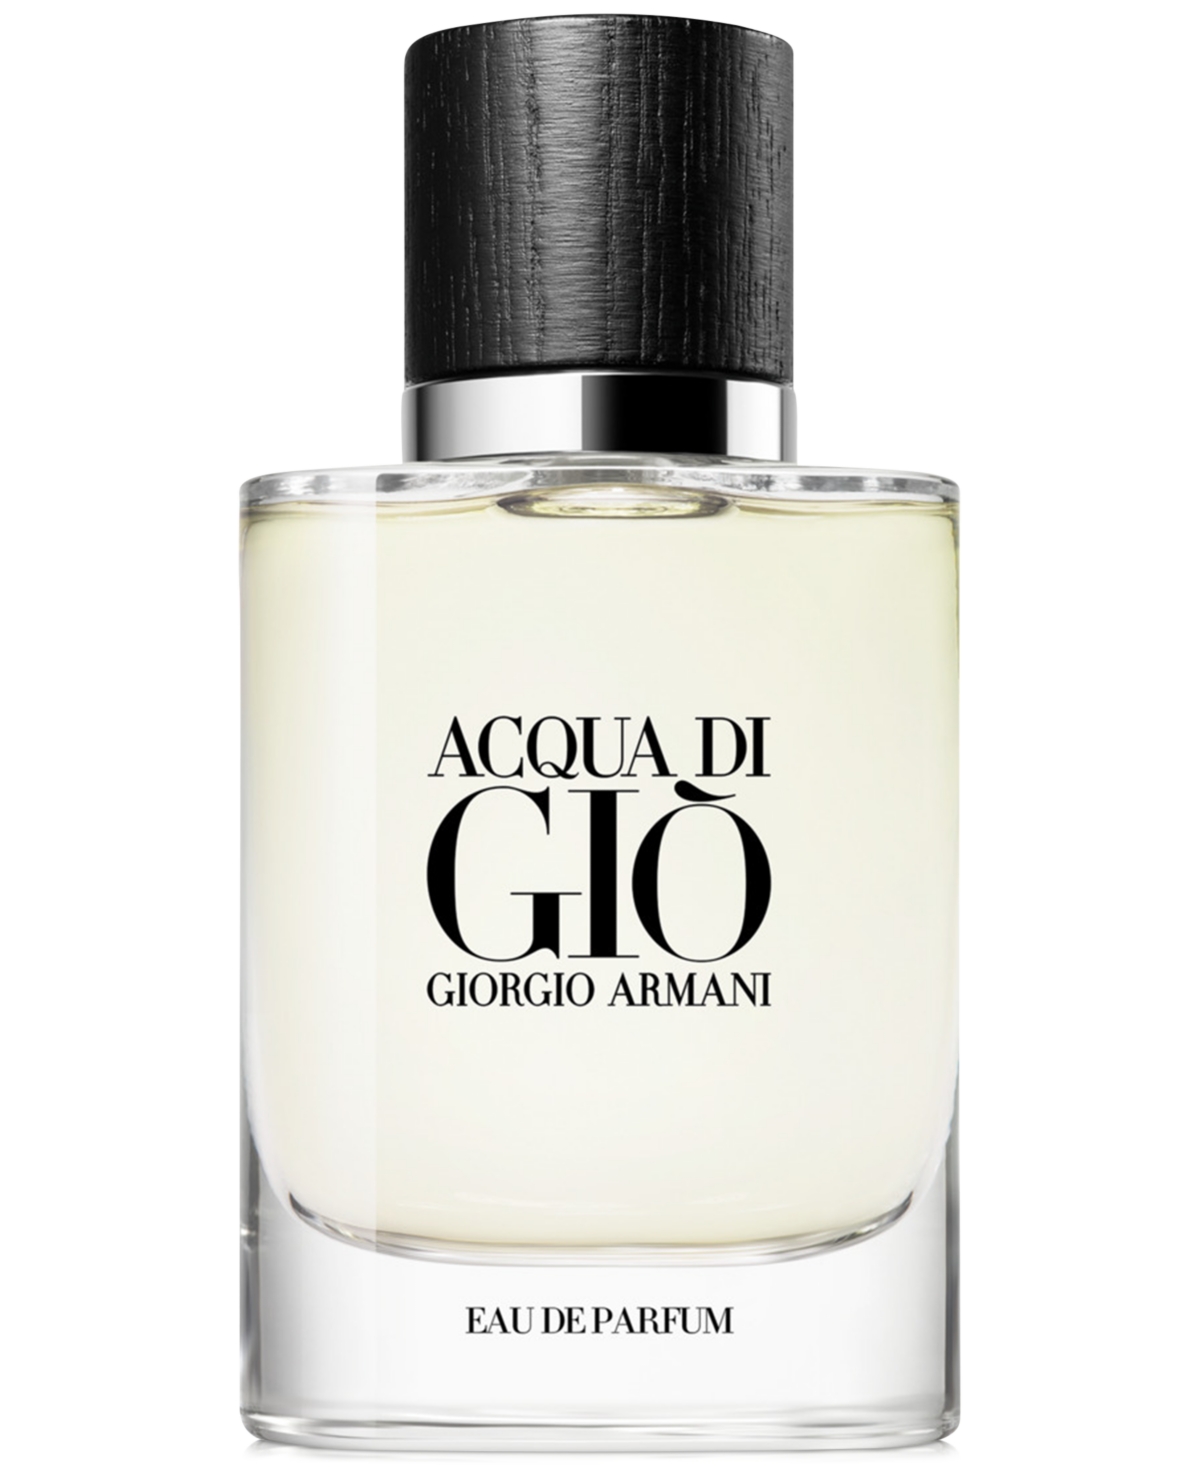 Armani Beauty Acqua di Gio Eau de Parfum Spray, 1.35 oz.